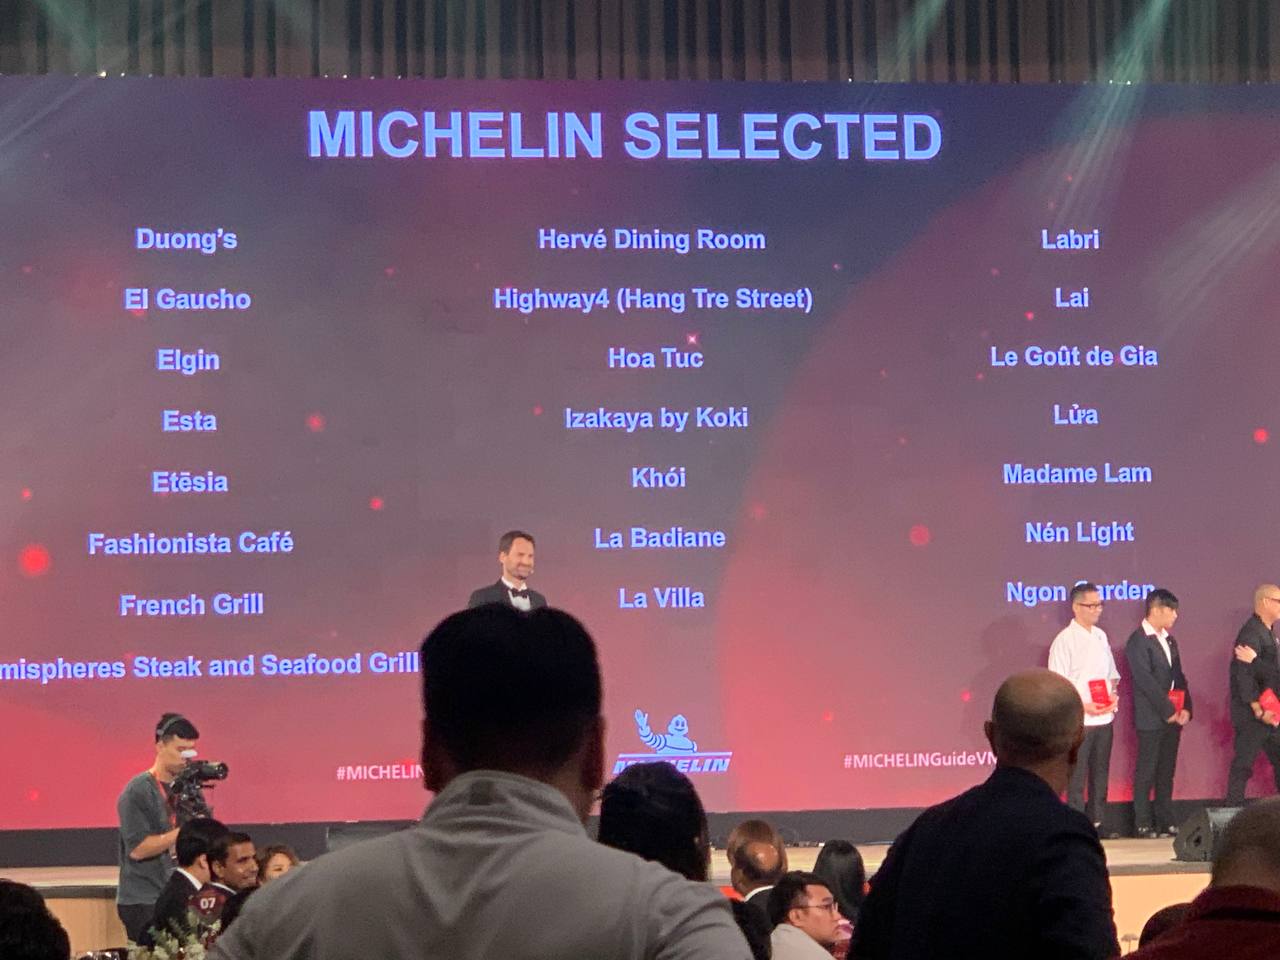 Danh sách chính thức các nhà hàng, quán ăn tại Việt Nam được Michelin công bố theo các hạng mục - ảnh 3